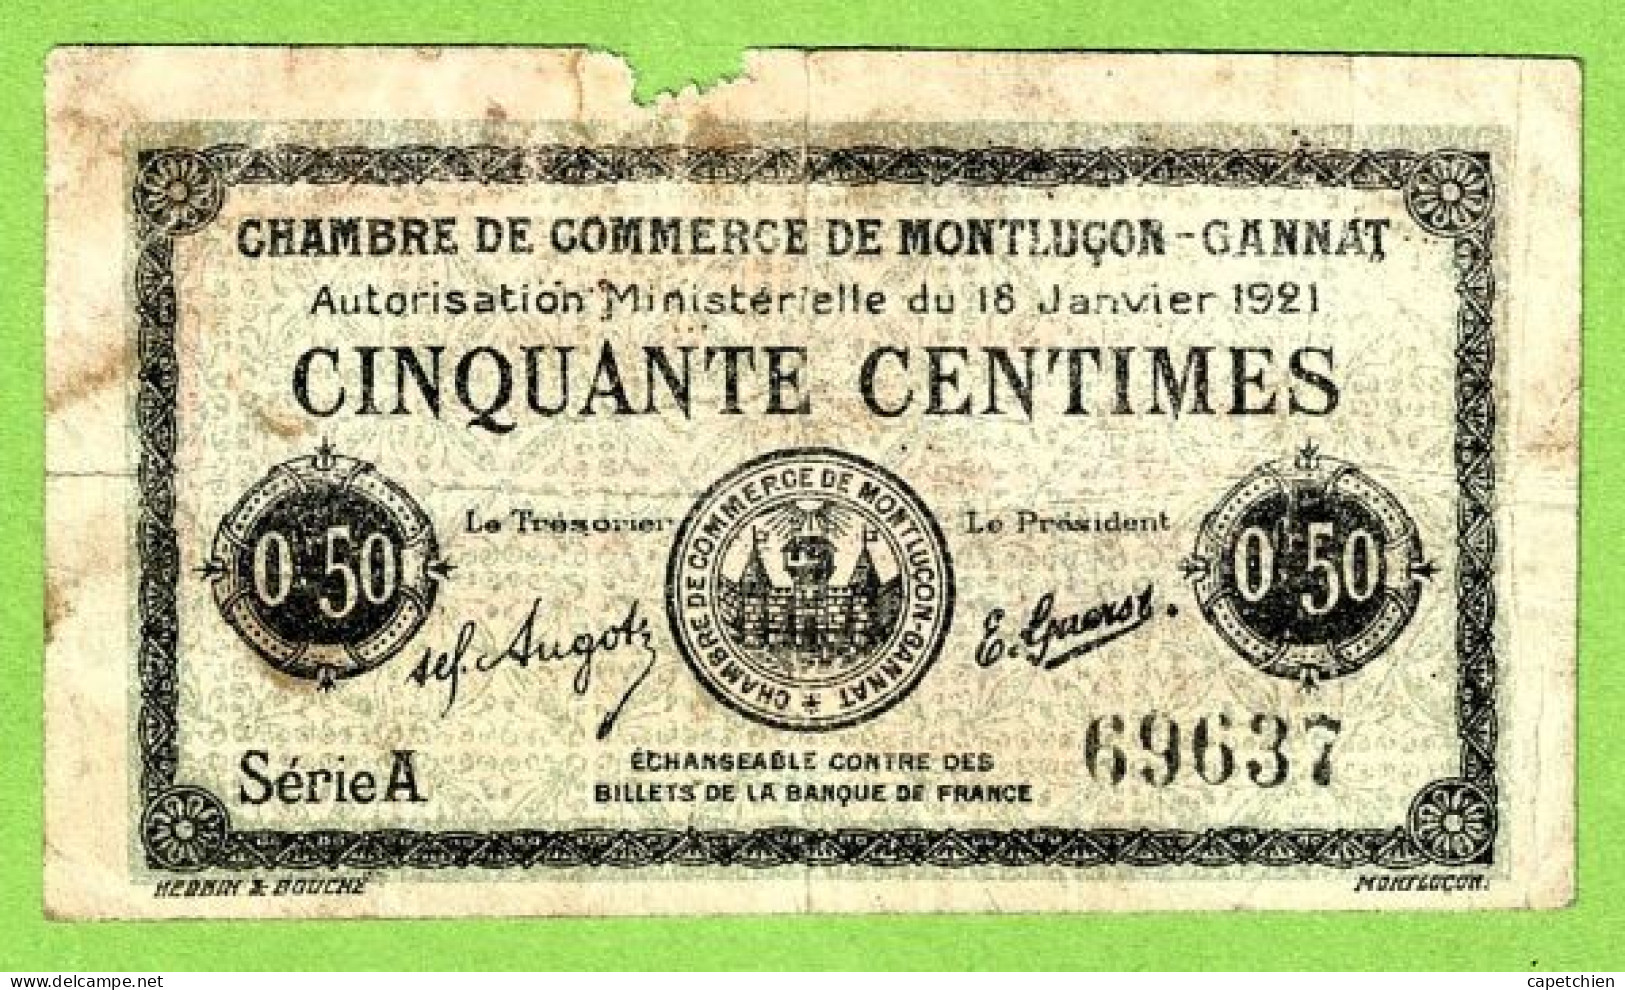 FRANCE / CHAMBRE De COMMERCE De MONTLUÇON - GANNAT /50 CENTIMES / 18 JANVIER 1921  N° 69637 / SERIE A - Chambre De Commerce